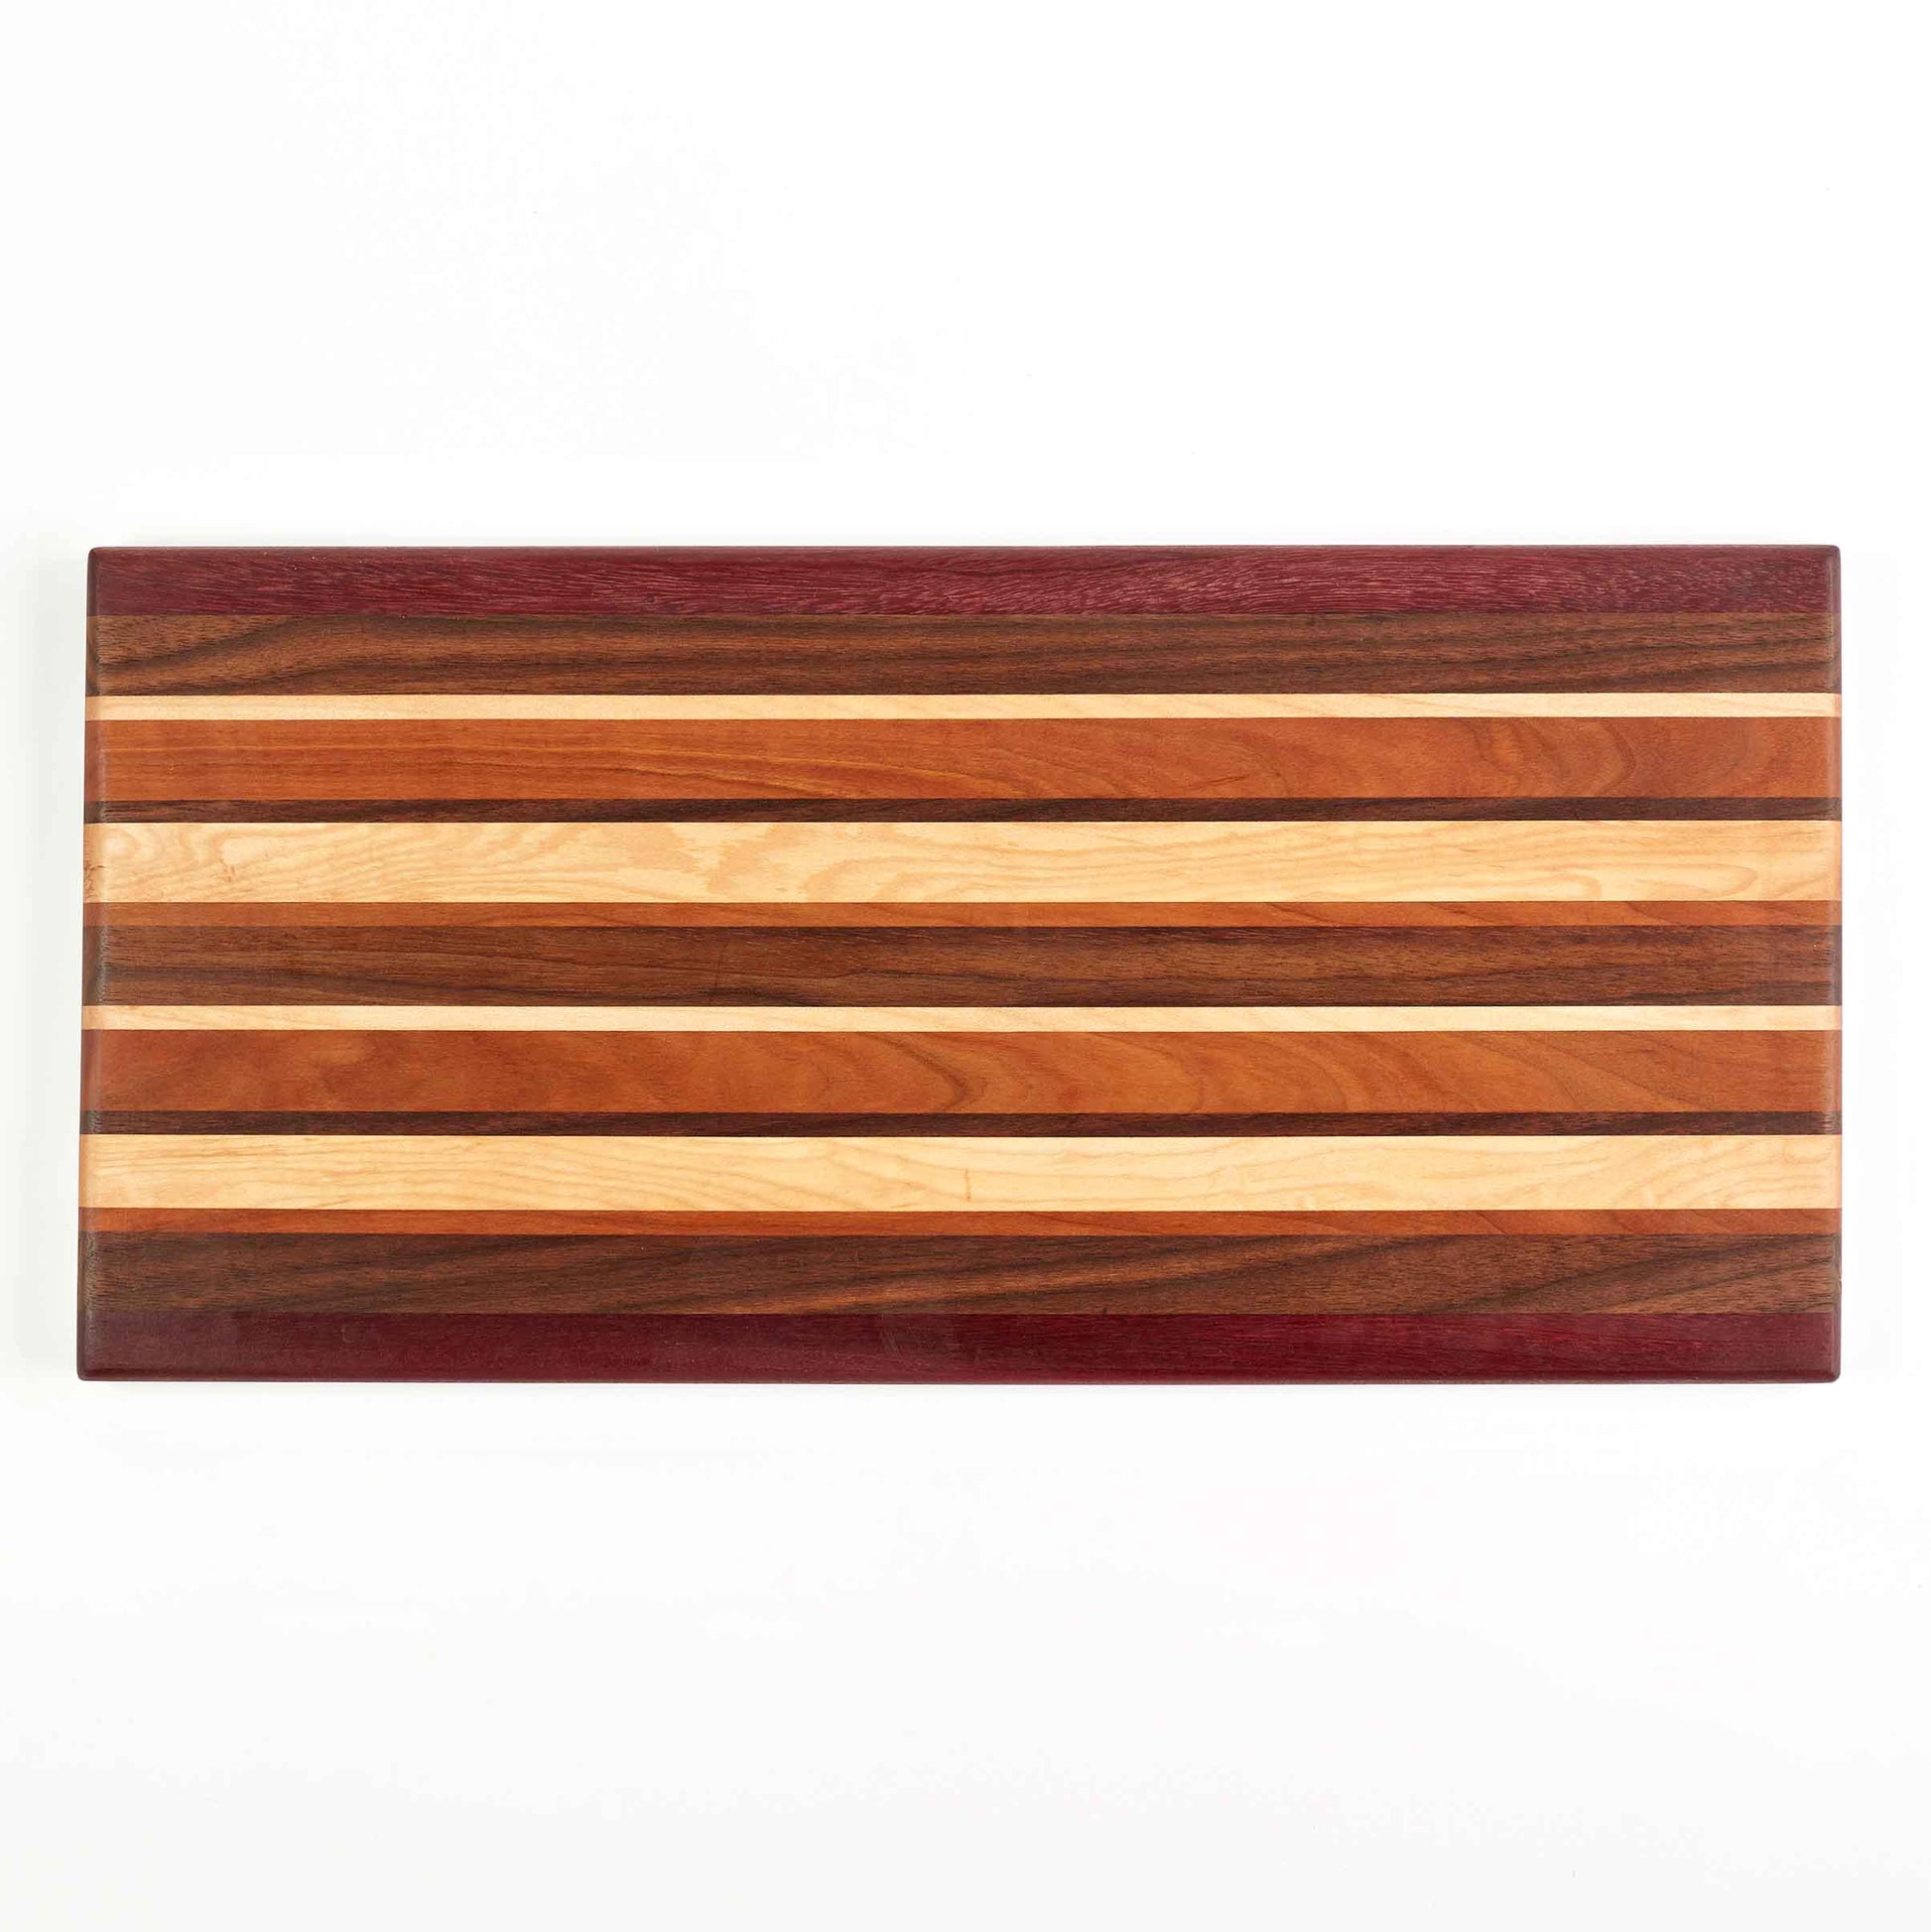 Cutting Board - Walnut Board with Handle - Medium - Personalized